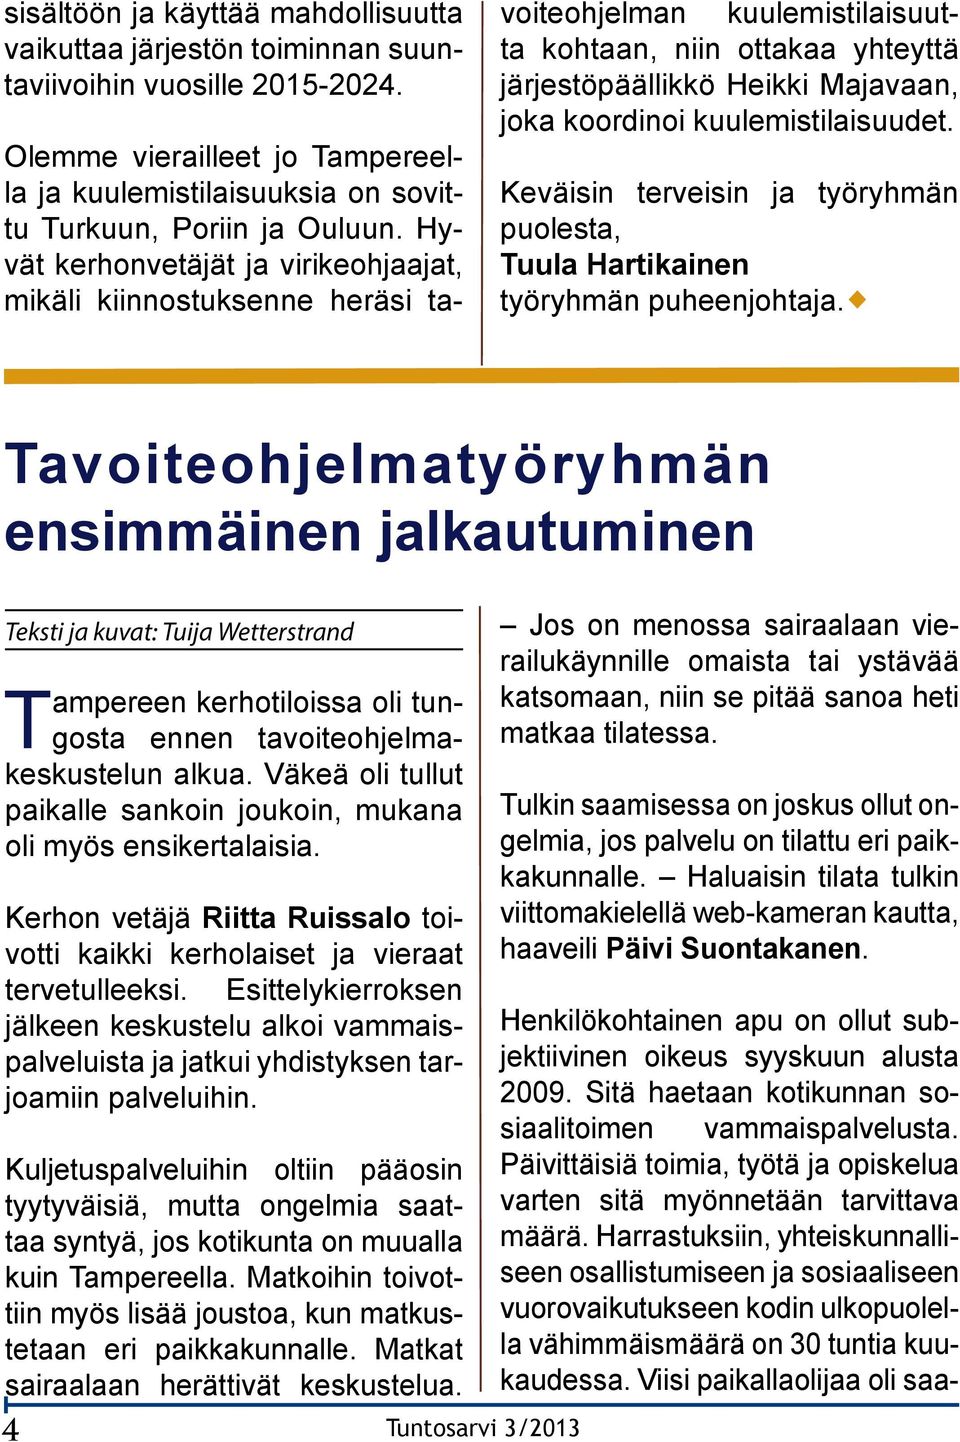 kuulemistilaisuudet. Keväisin terveisin ja työryhmän puolesta, Tuula Hartikainen työryhmän puheenjohtaja.